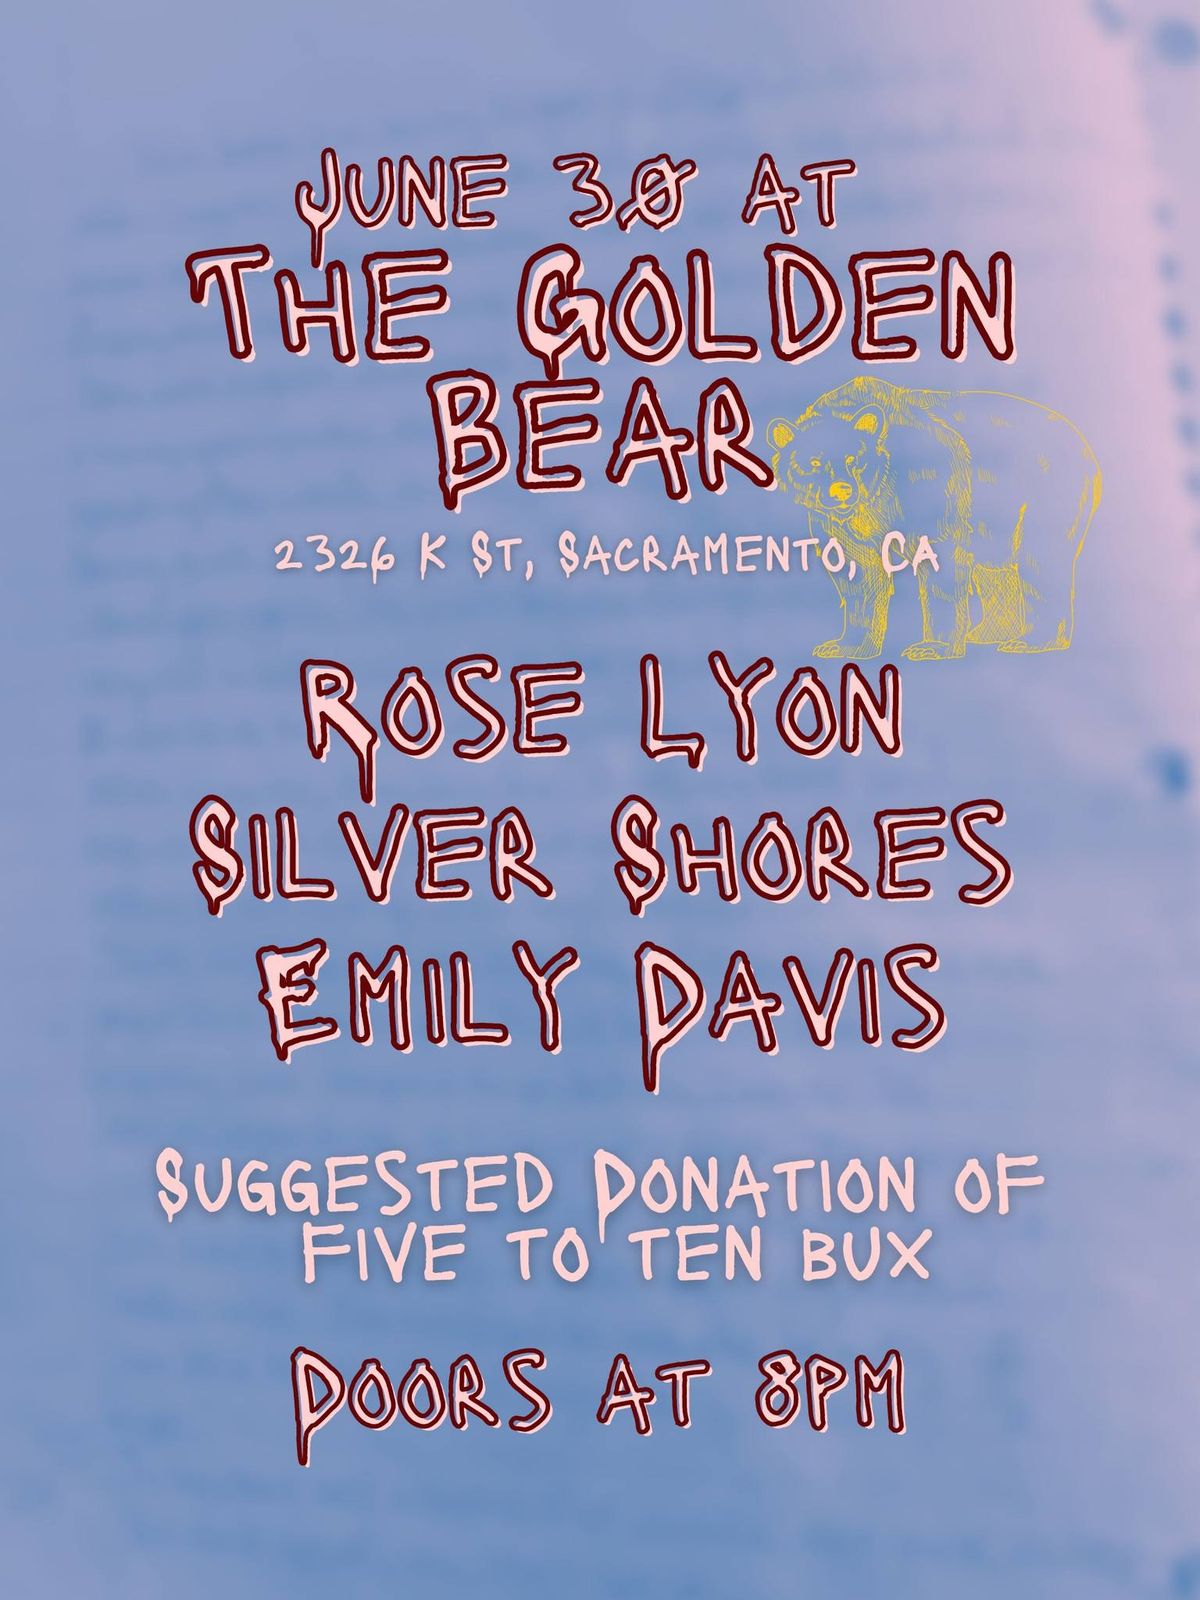 Rose Lyon, Silver Shores, Emily Davis at The Golden Bear